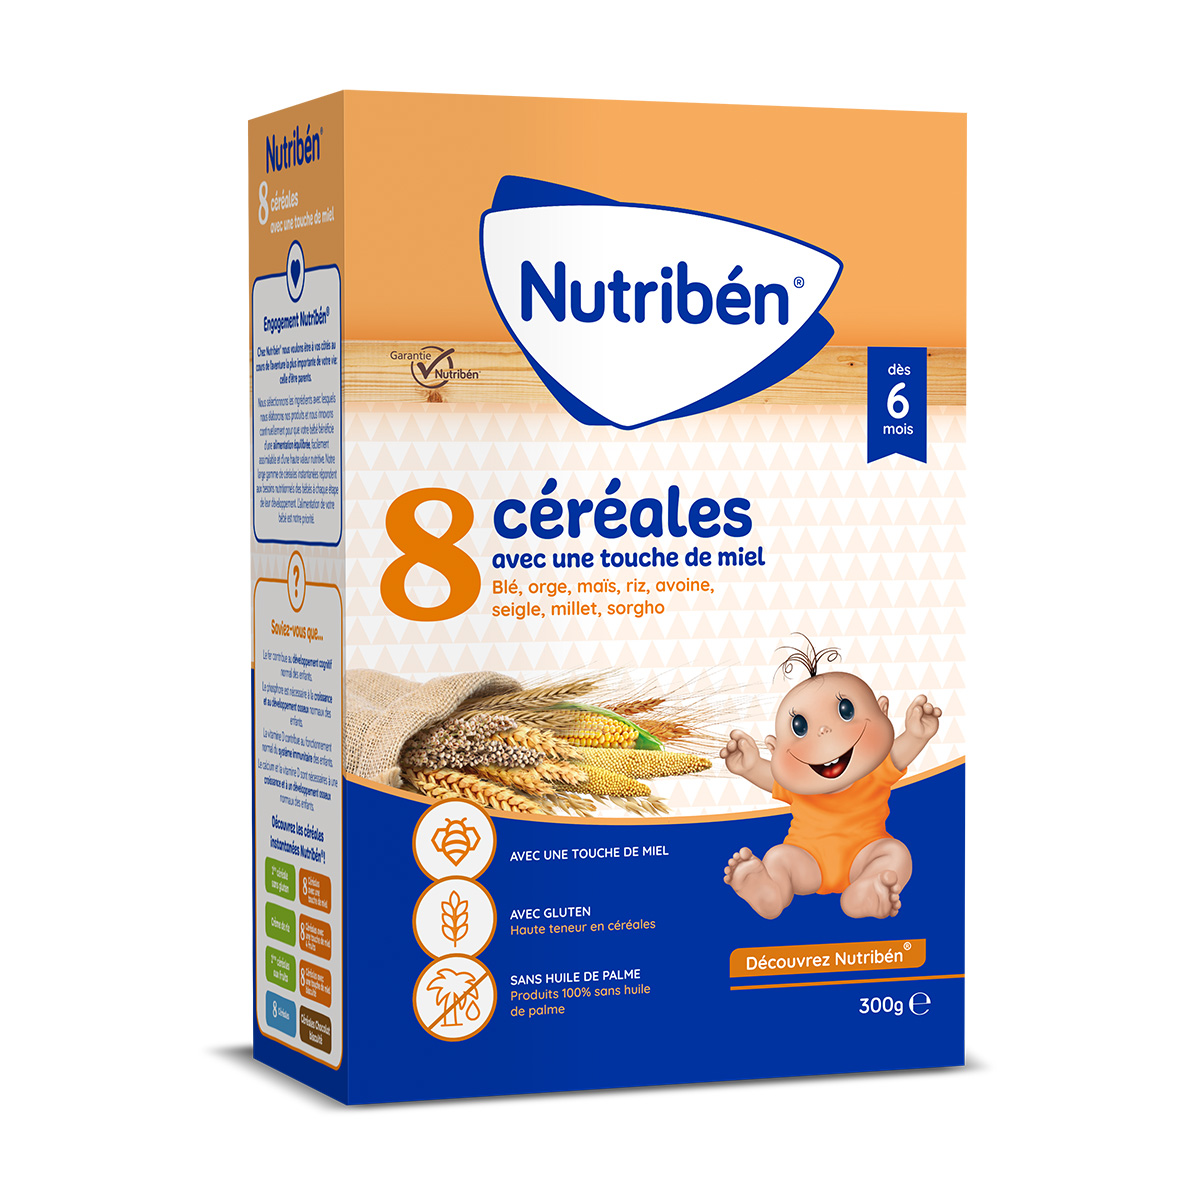 Les céréales pour bébé : l'intérêt nutritionnel des céréales